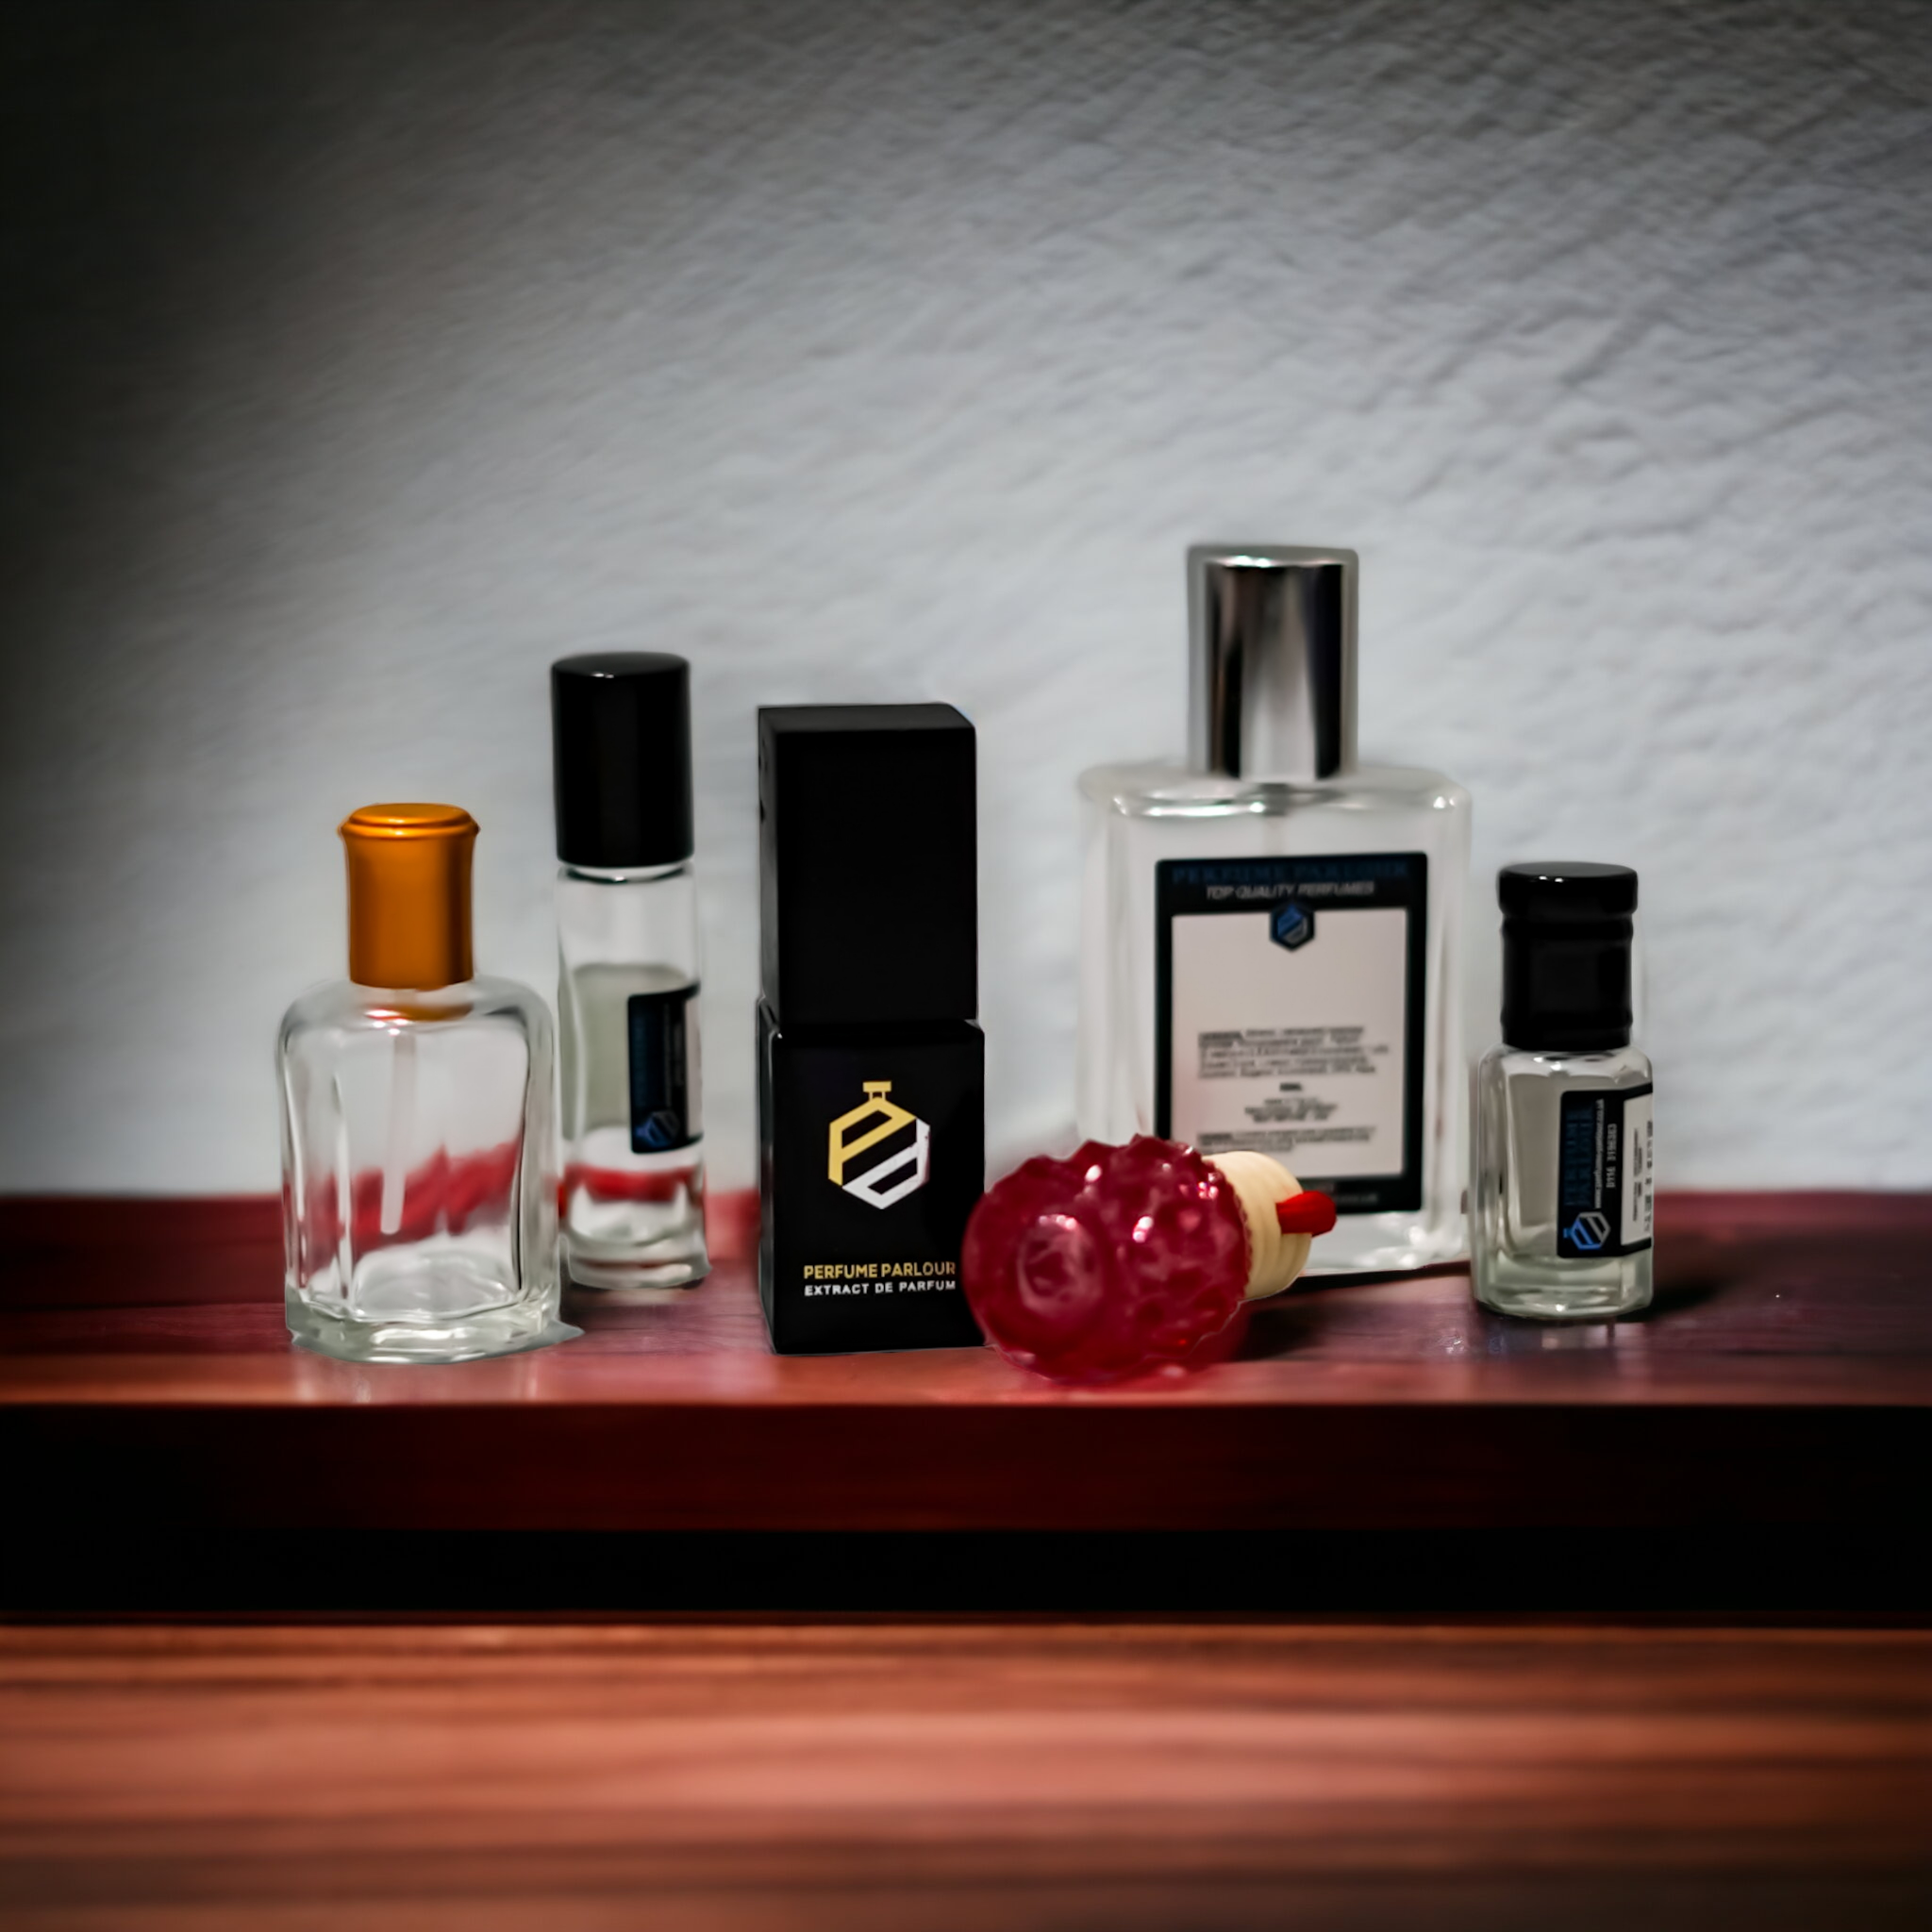 Chanel Allure Homme Edition Blanche - for Men - Eau de Parfum – parfumerielb